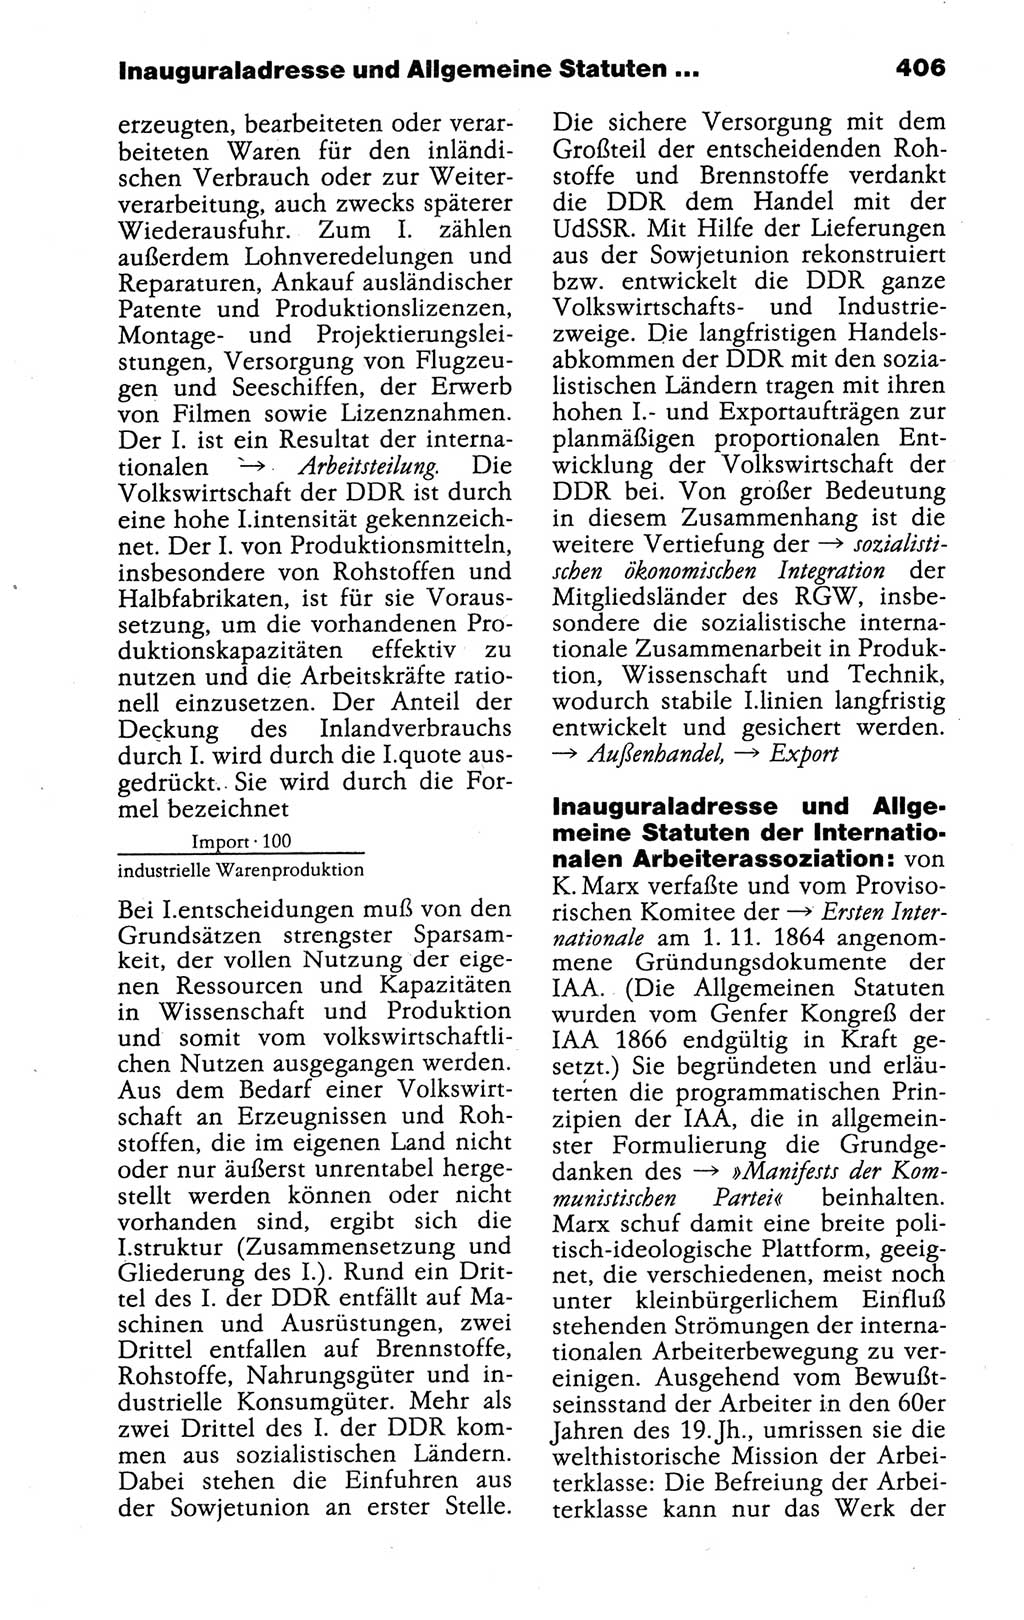 Kleines politisches Wörterbuch [Deutsche Demokratische Republik (DDR)] 1988, Seite 406 (Kl. pol. Wb. DDR 1988, S. 406)